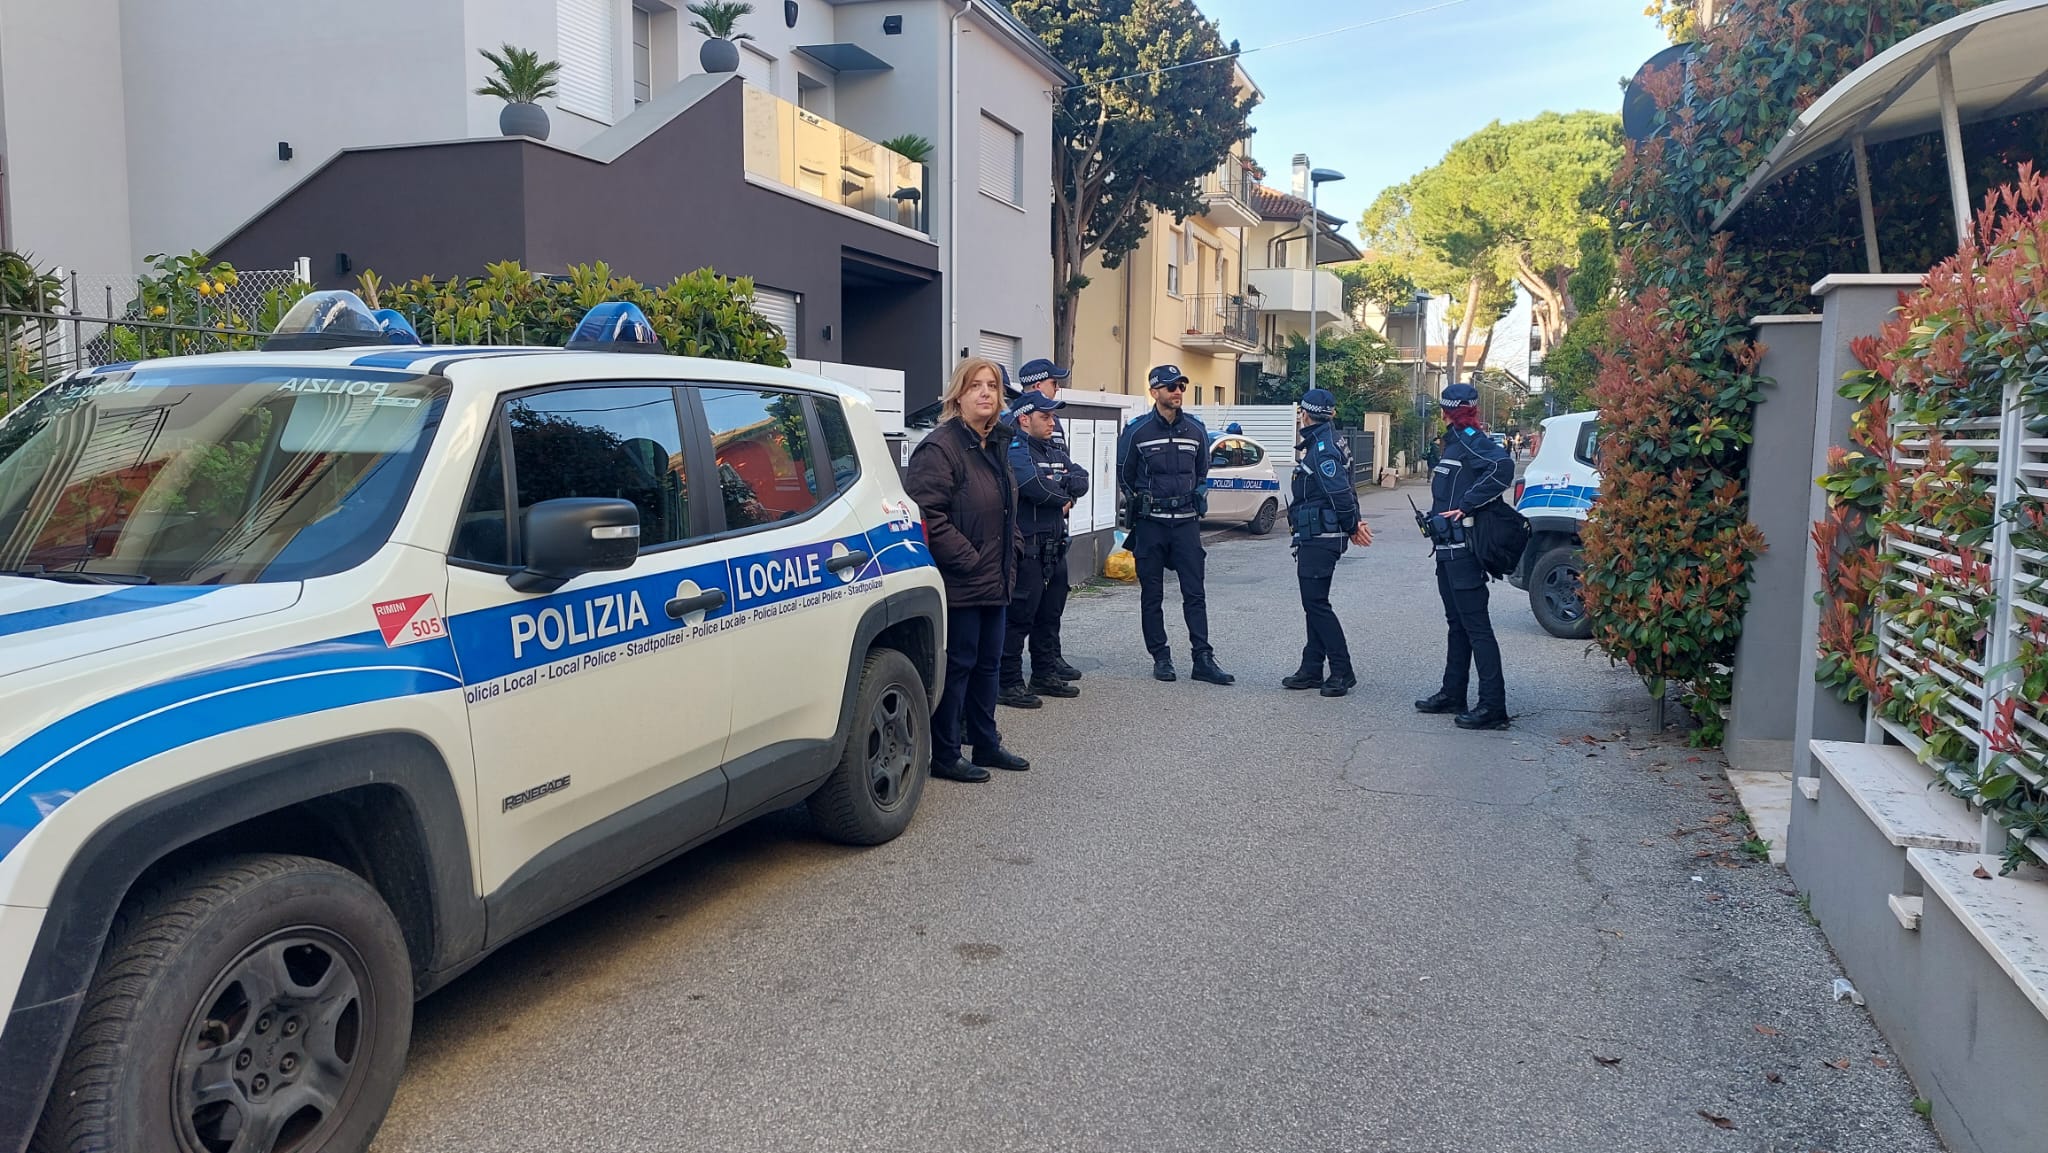 Residence del sesso a pagamento a Rimini, arrestato il gestore 90enne